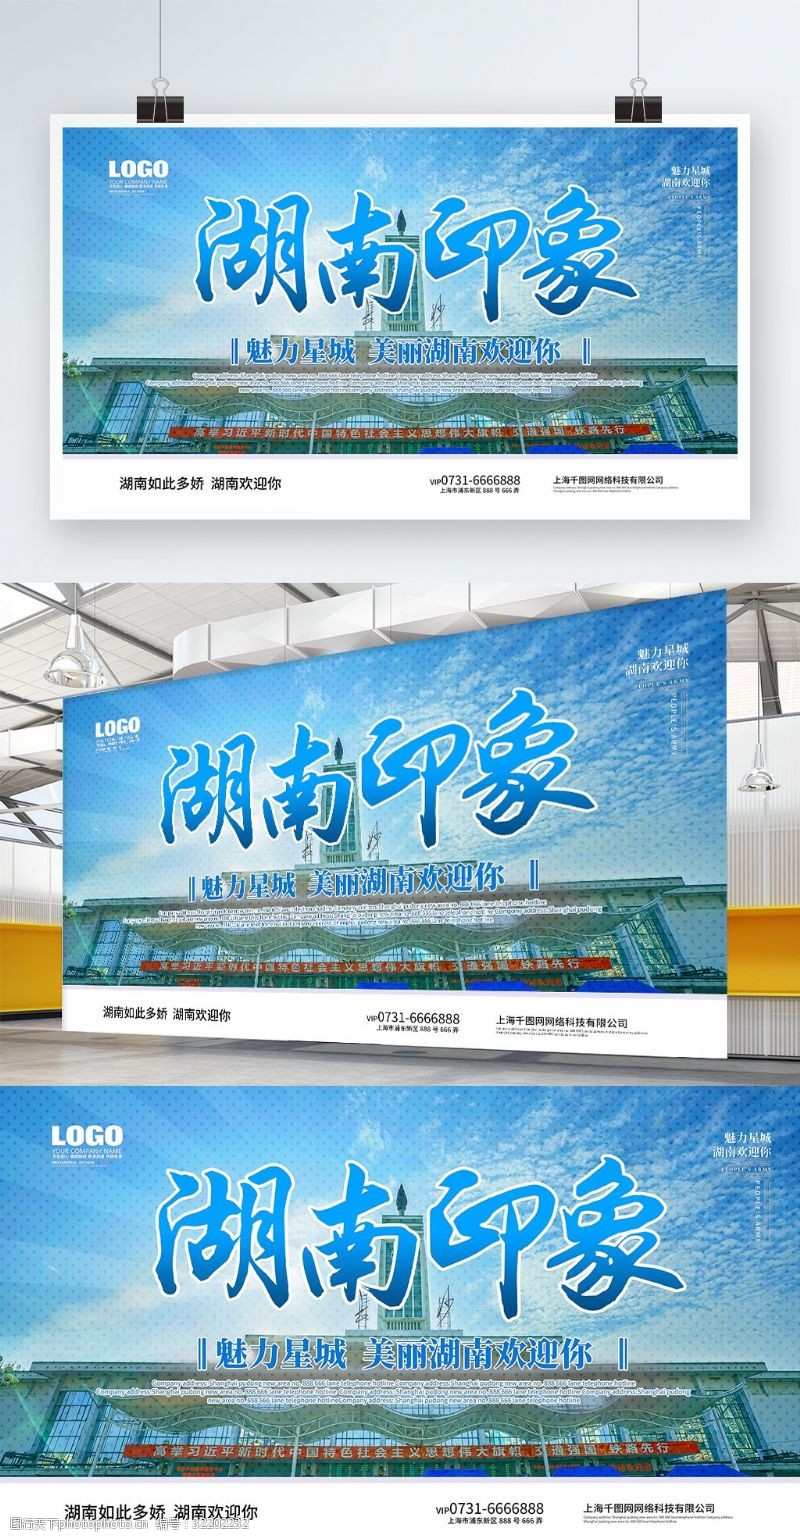 广州旅游景点蓝色湖南印象湖南旅游展板展板